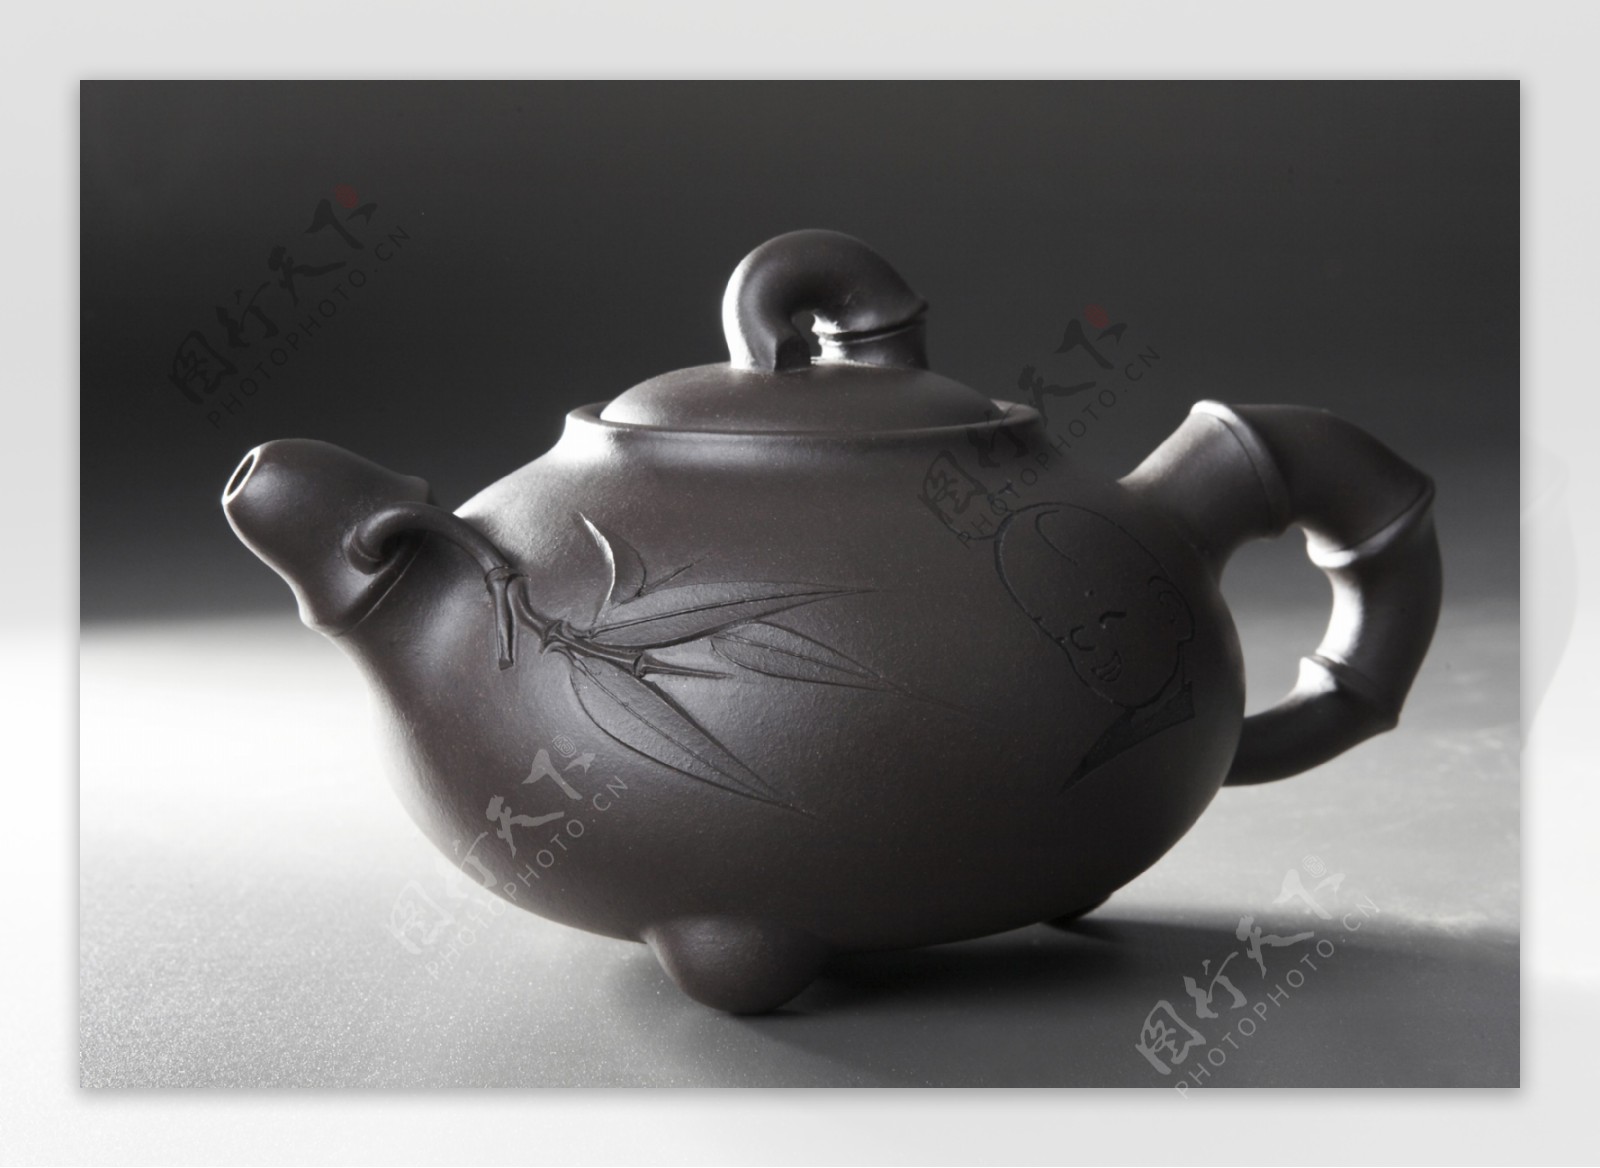 茶壶紫砂茶壶商业摄影产品摄影图片